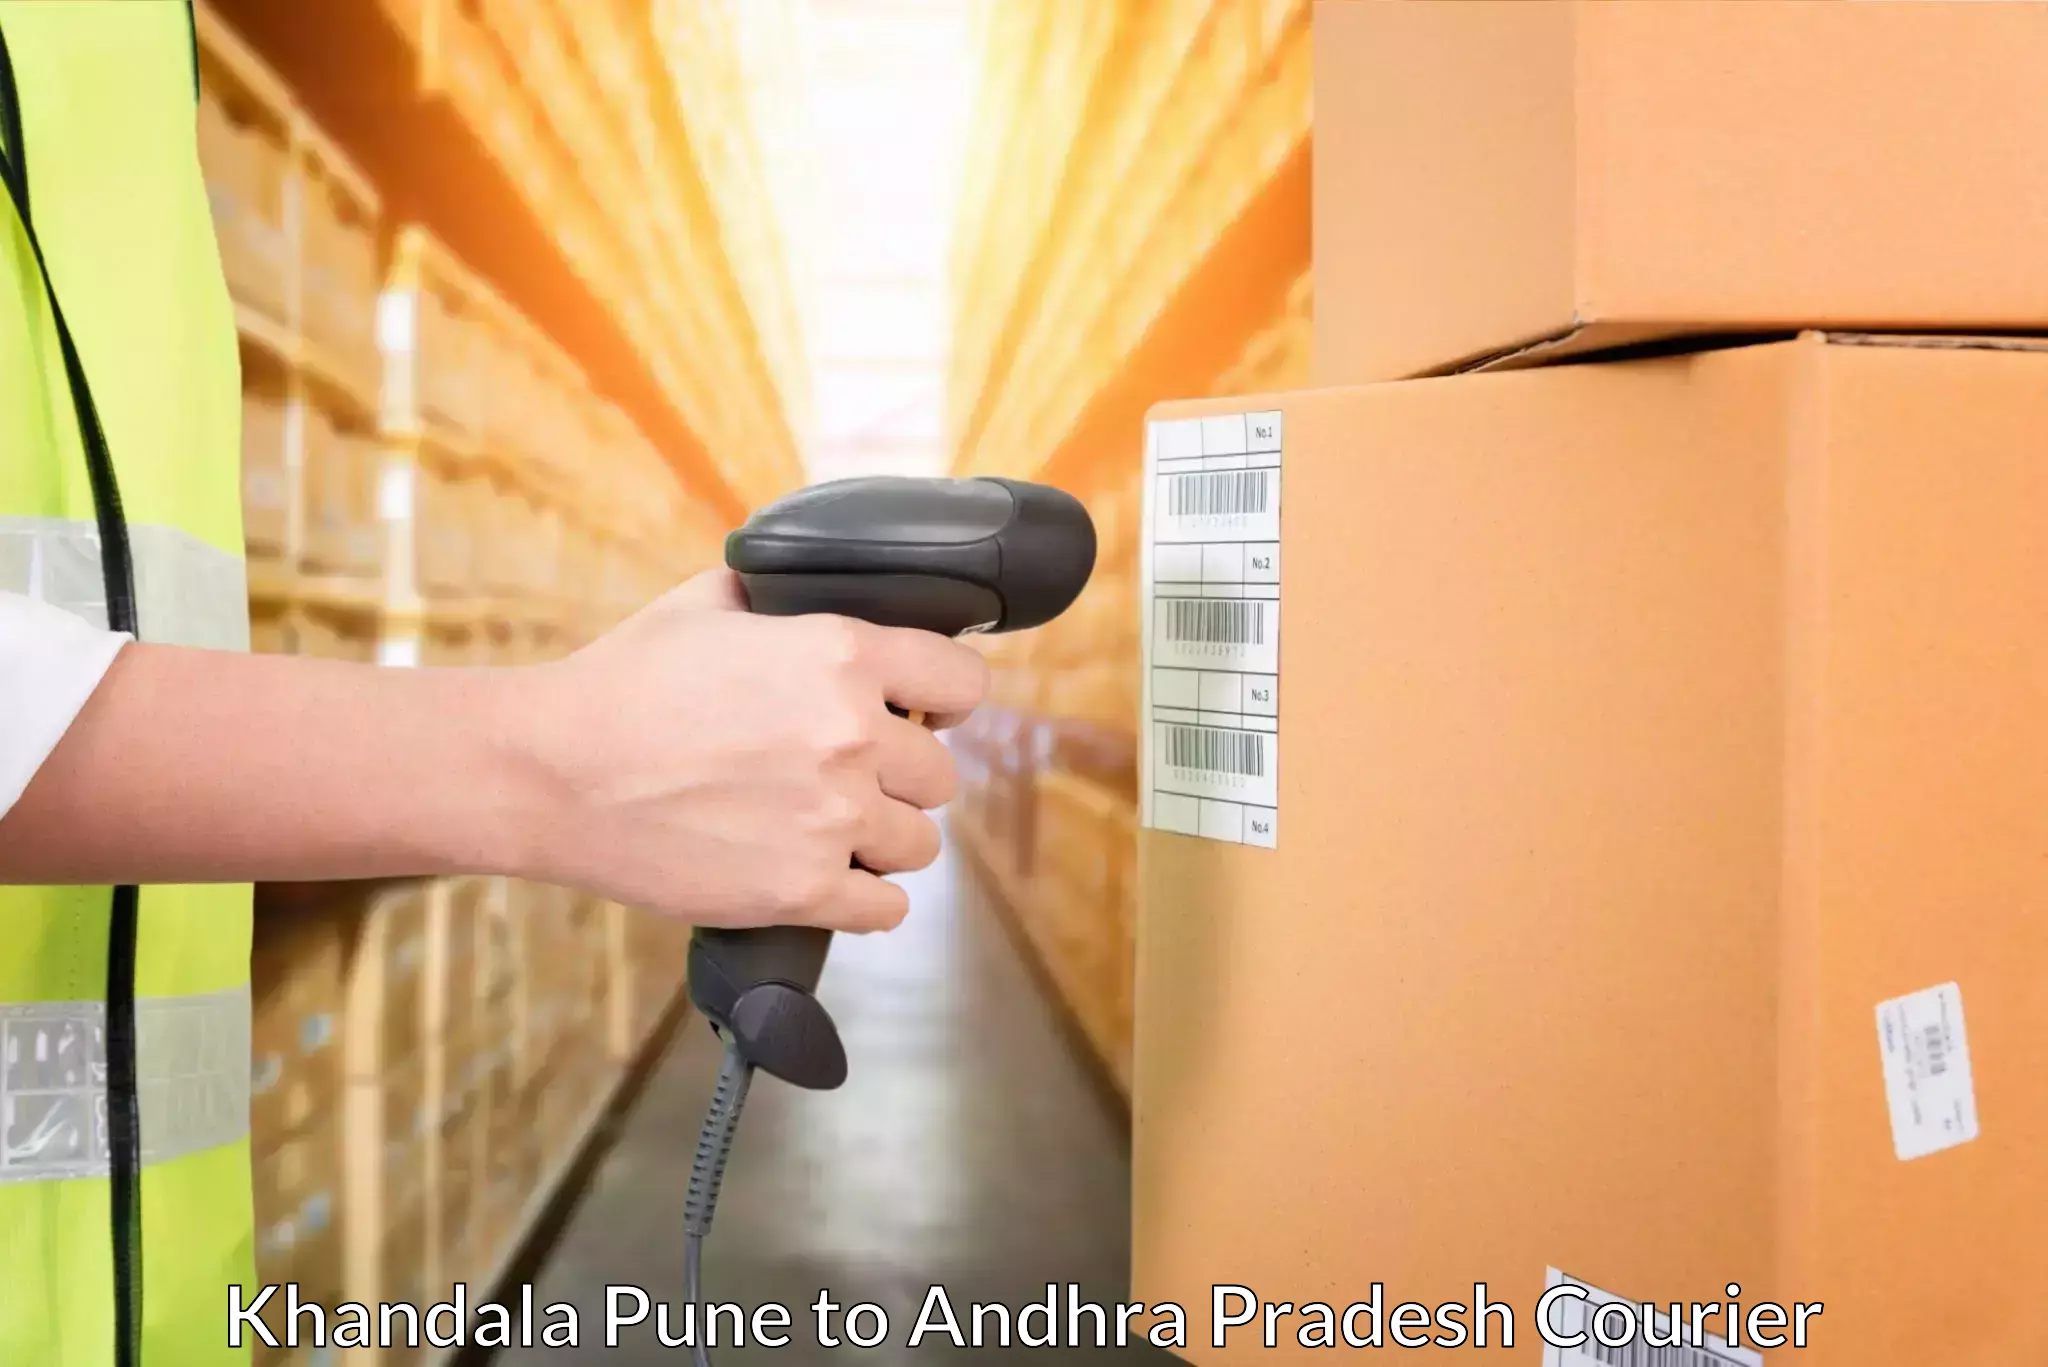 International courier rates Khandala Pune to Yerragondapalem